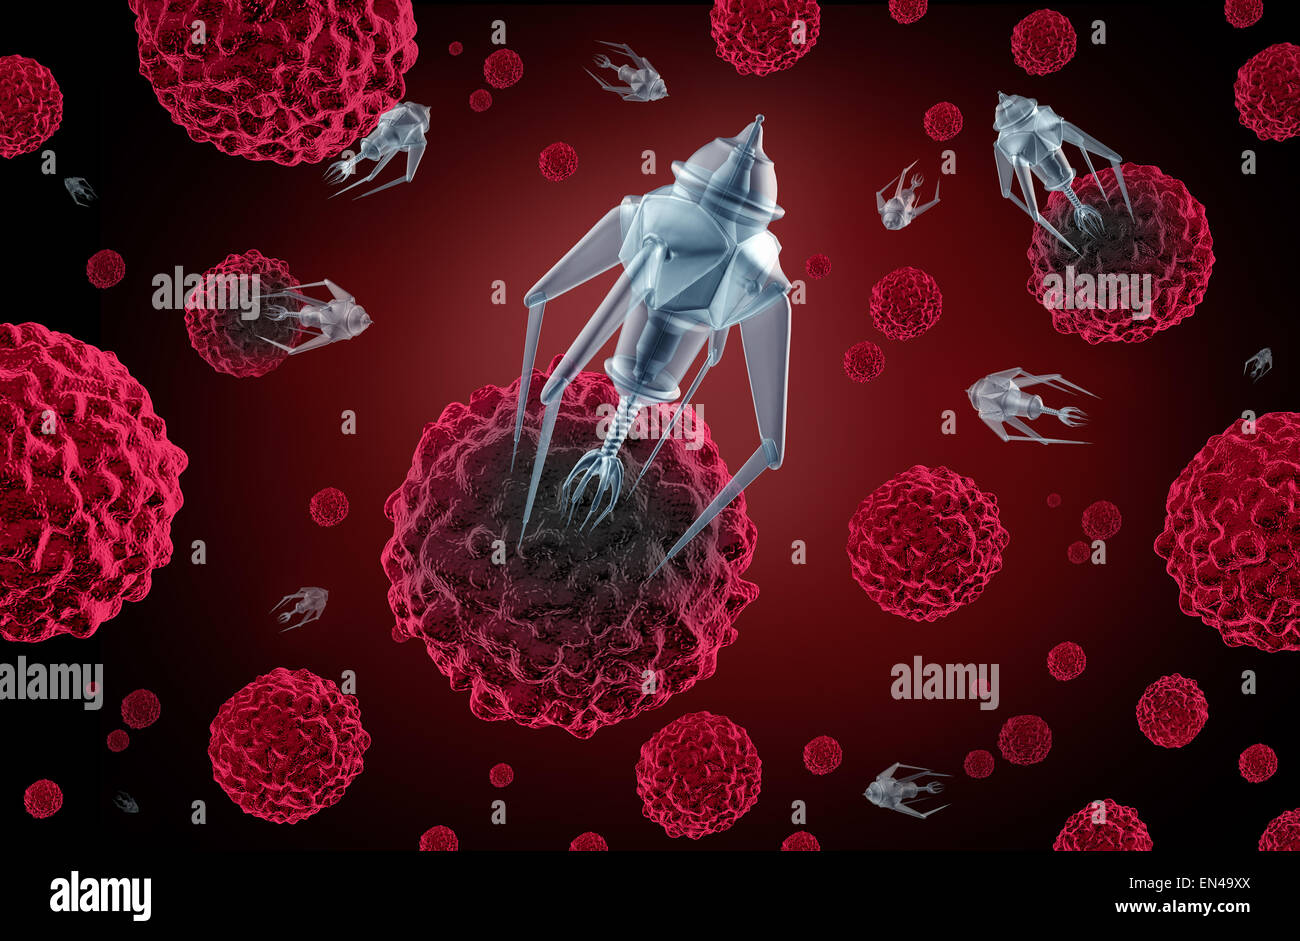 La nanotechnologie medicine concept comme un groupe de robots nano microscopique ou nanobots programmé pour tuer des cellules de cancer ou de maladies humaines comme un symbole de guérison santé futuriste. Banque D'Images